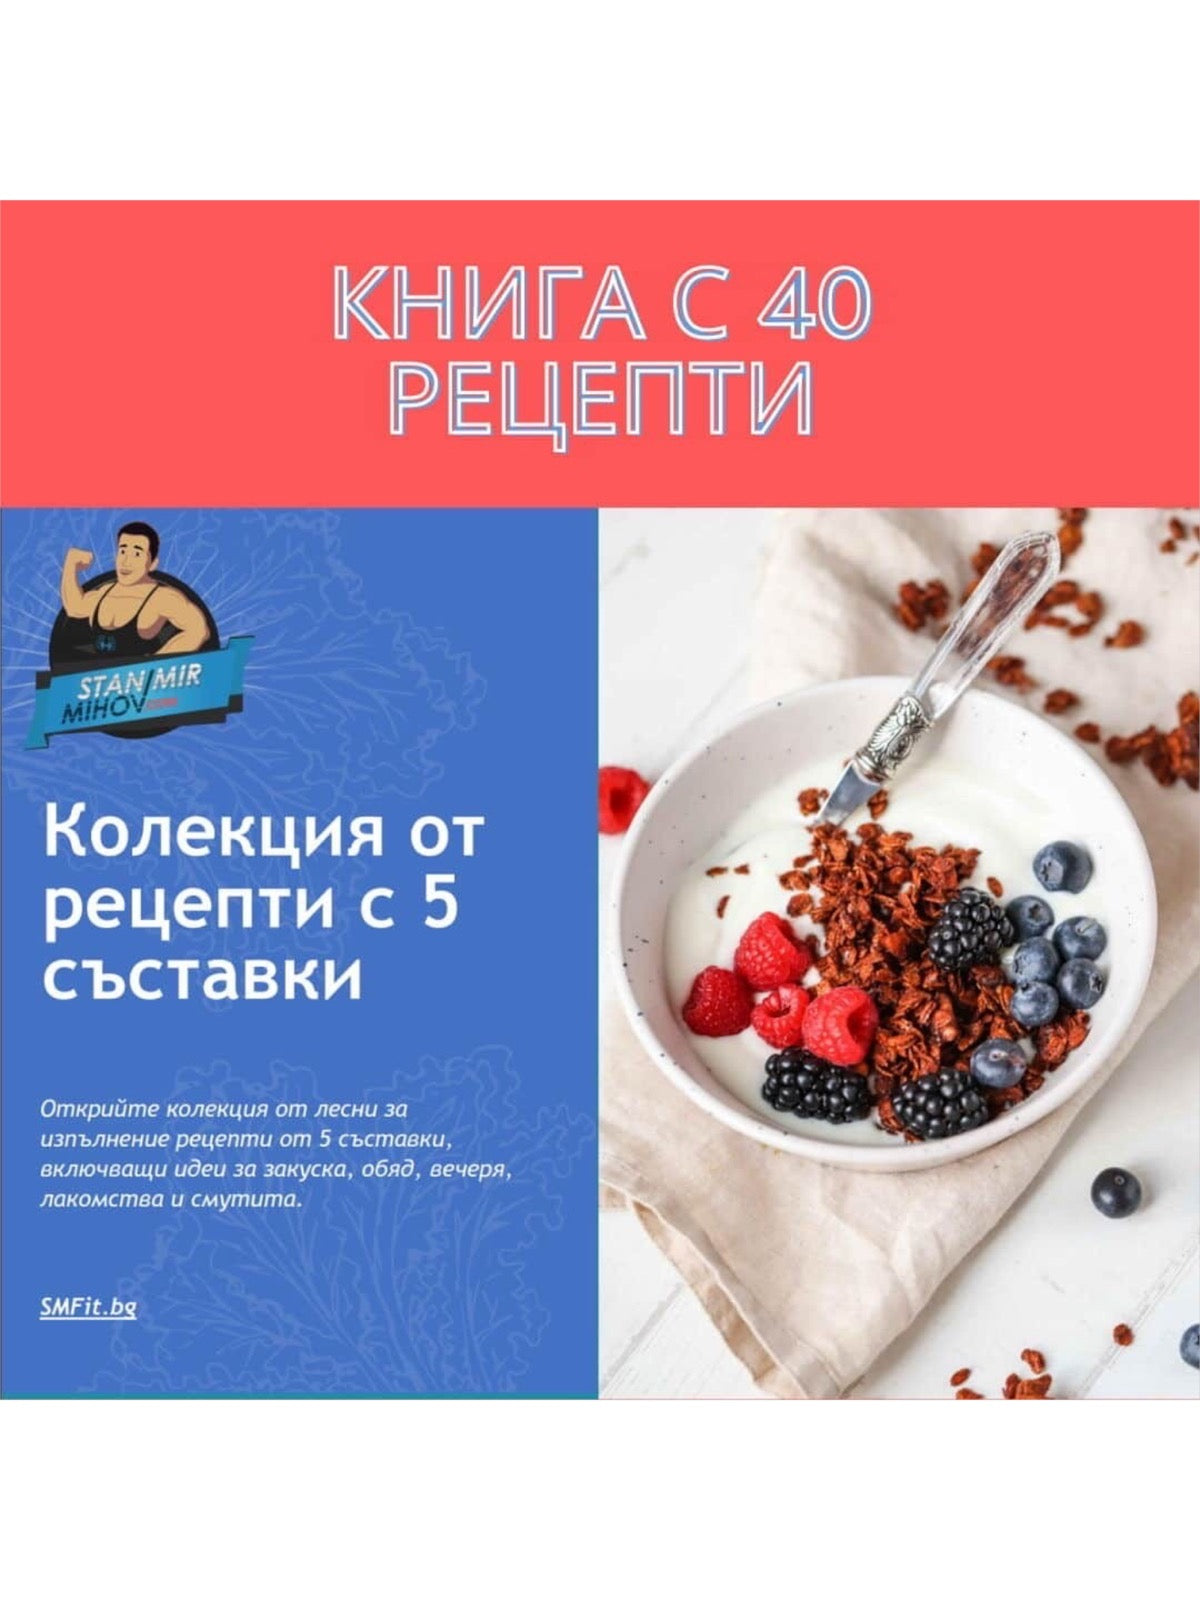 Електронна Книга с Рецепти от Станимир Михов